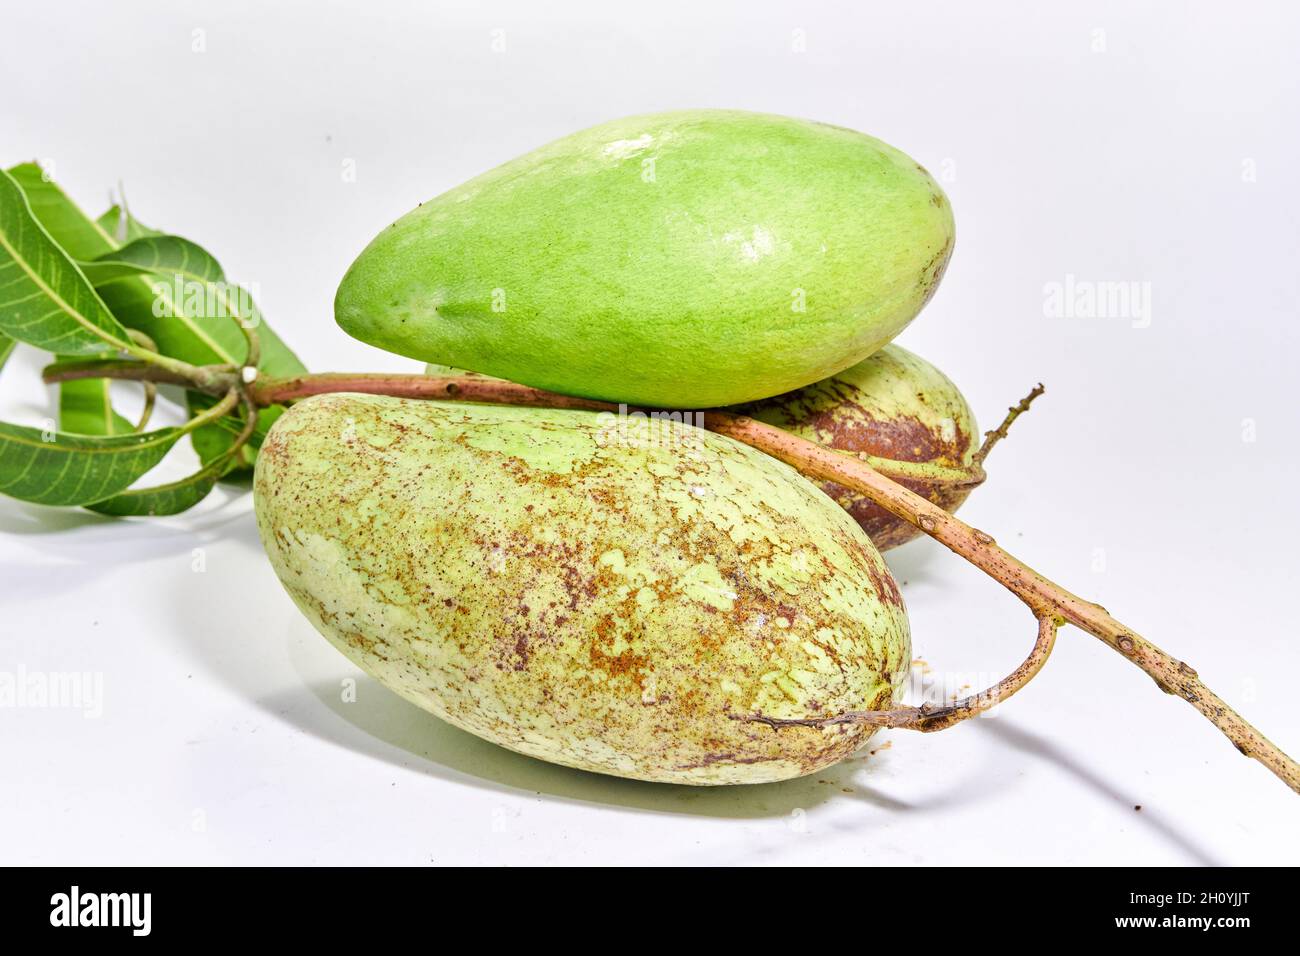 Nahaufnahme von frischen Mangofrüchten. Vitaminfrucht. Köstliche Mango zum Essen bereit. Stockfoto